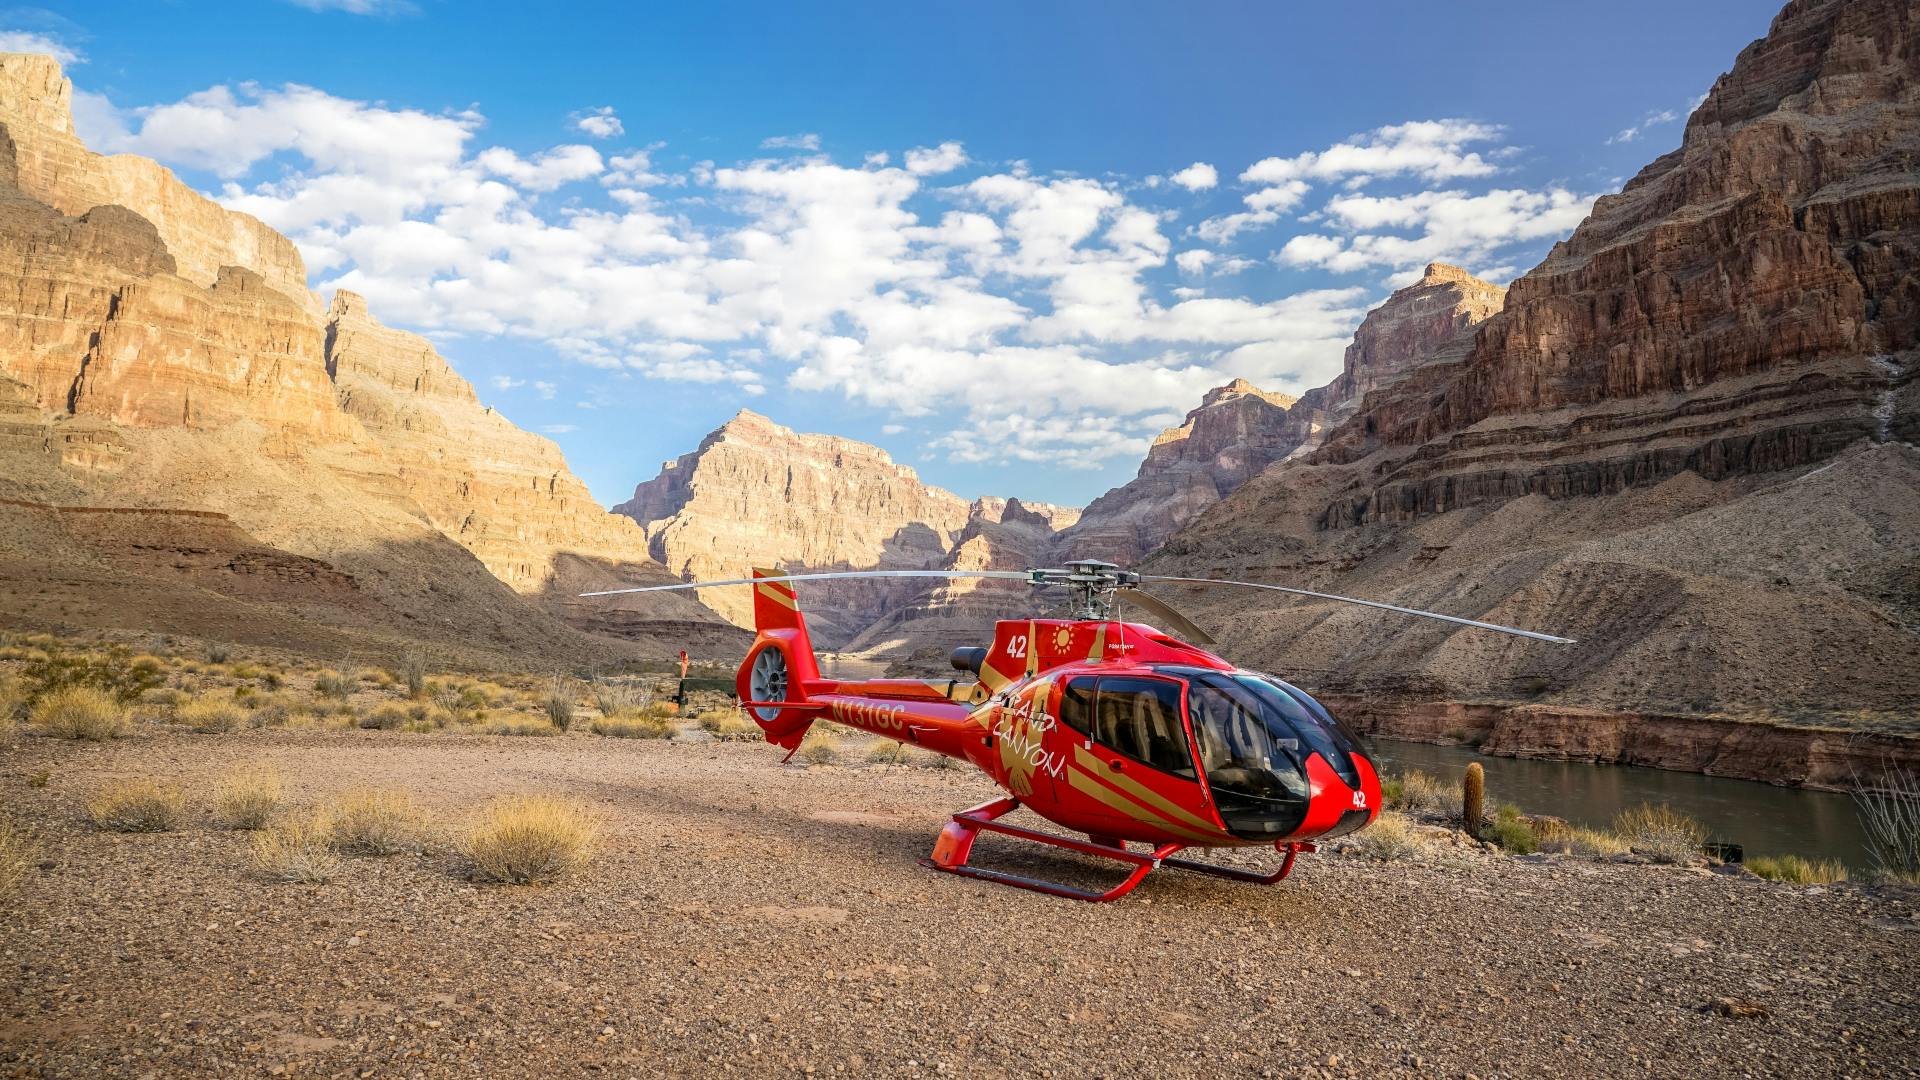 Uroczysta wycieczka helikopterem po Wielkim Kanionie z piknikiem